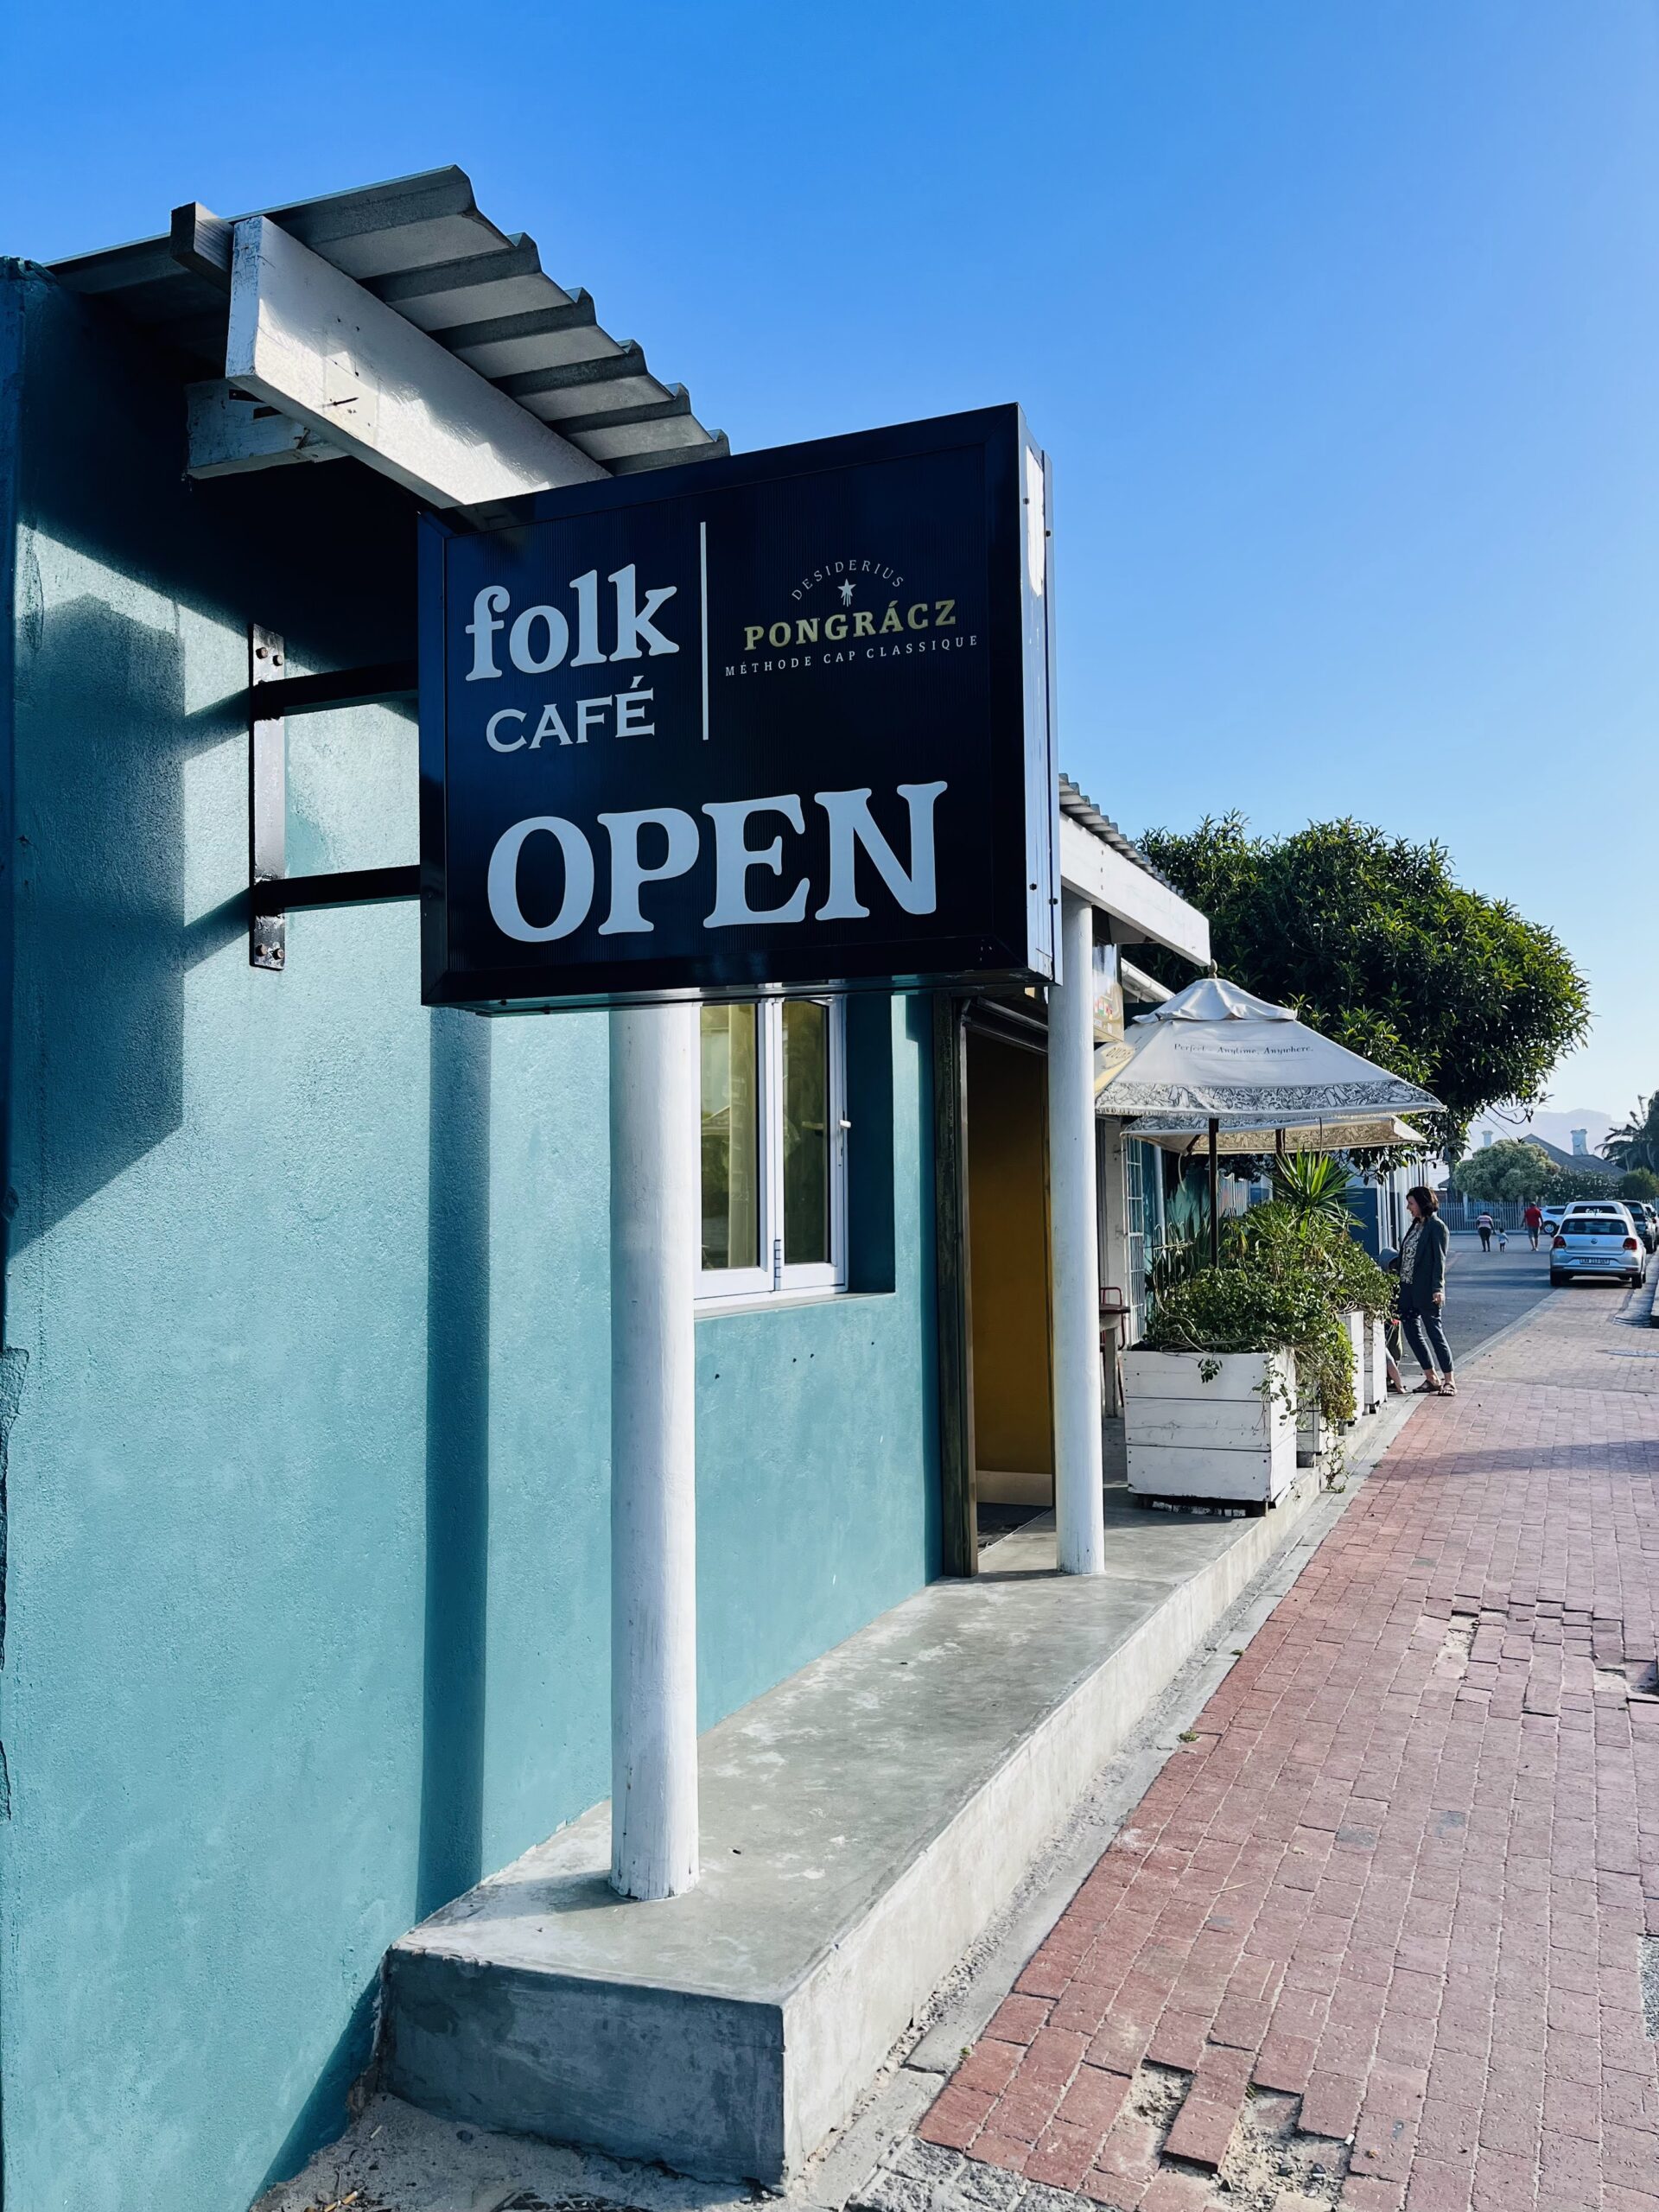 Folk Cafe Open Sign